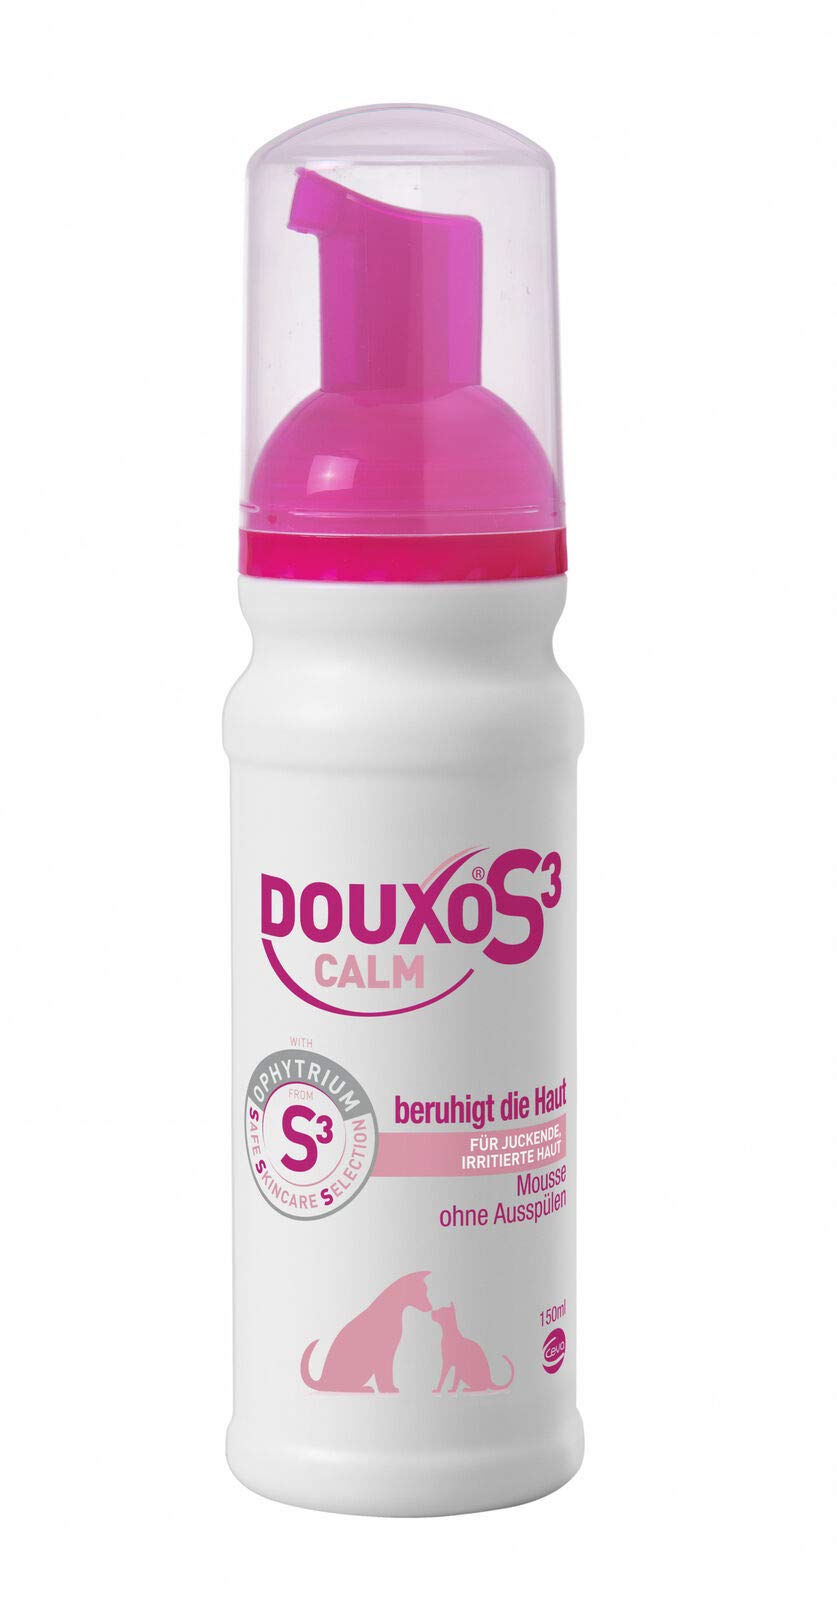 Douxo® S3 Calm Mousse 150 ml 150 ml (Pack of 1) - PawsPlanet Australia